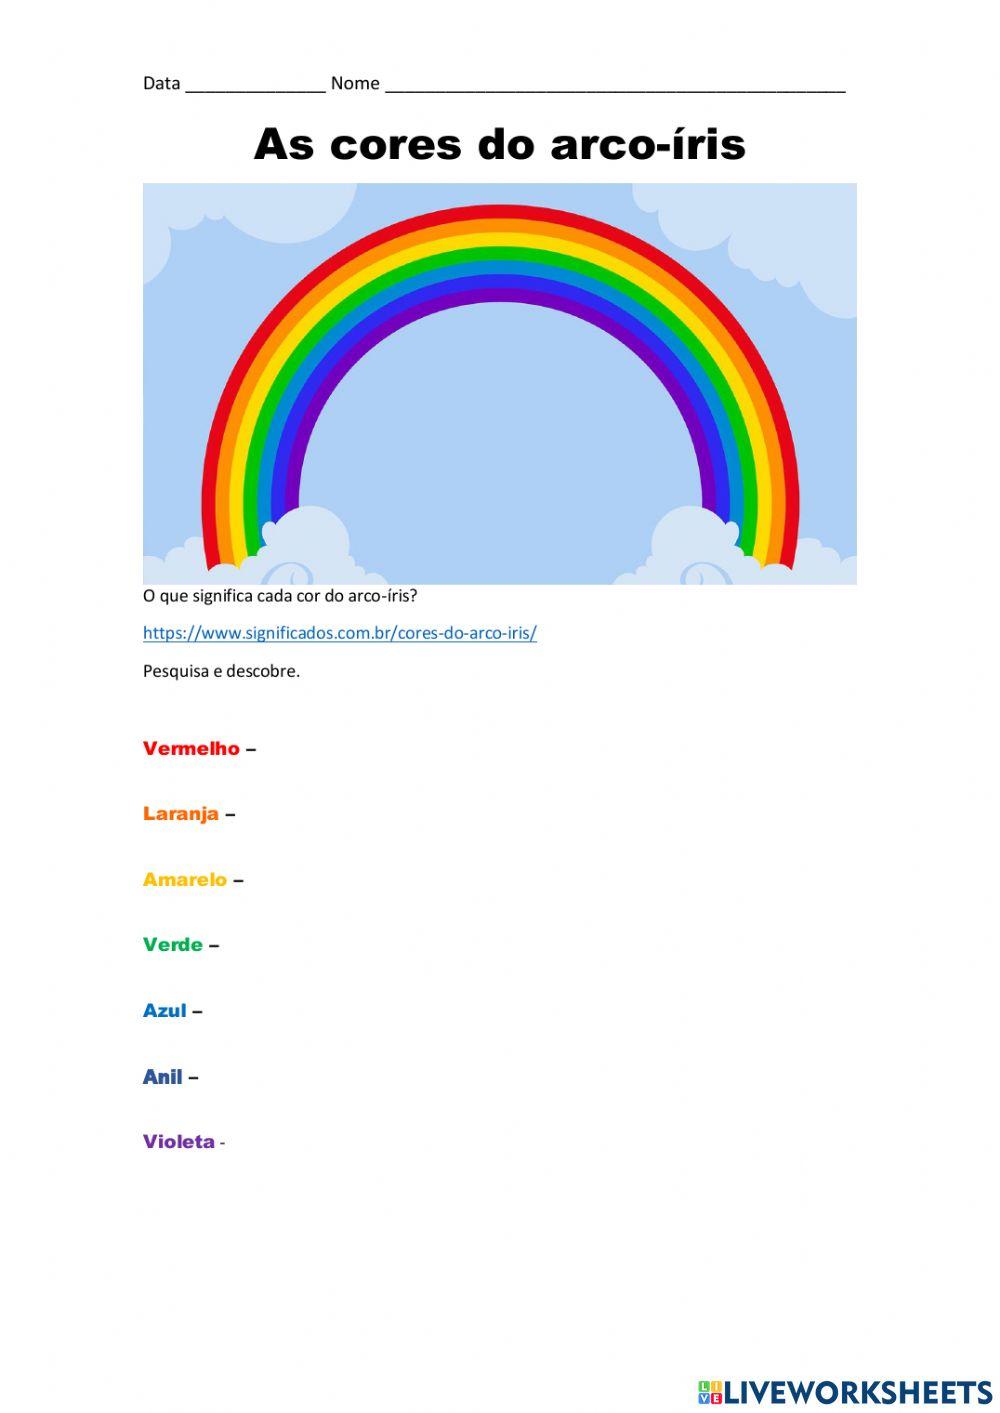 Cores do arco-íris